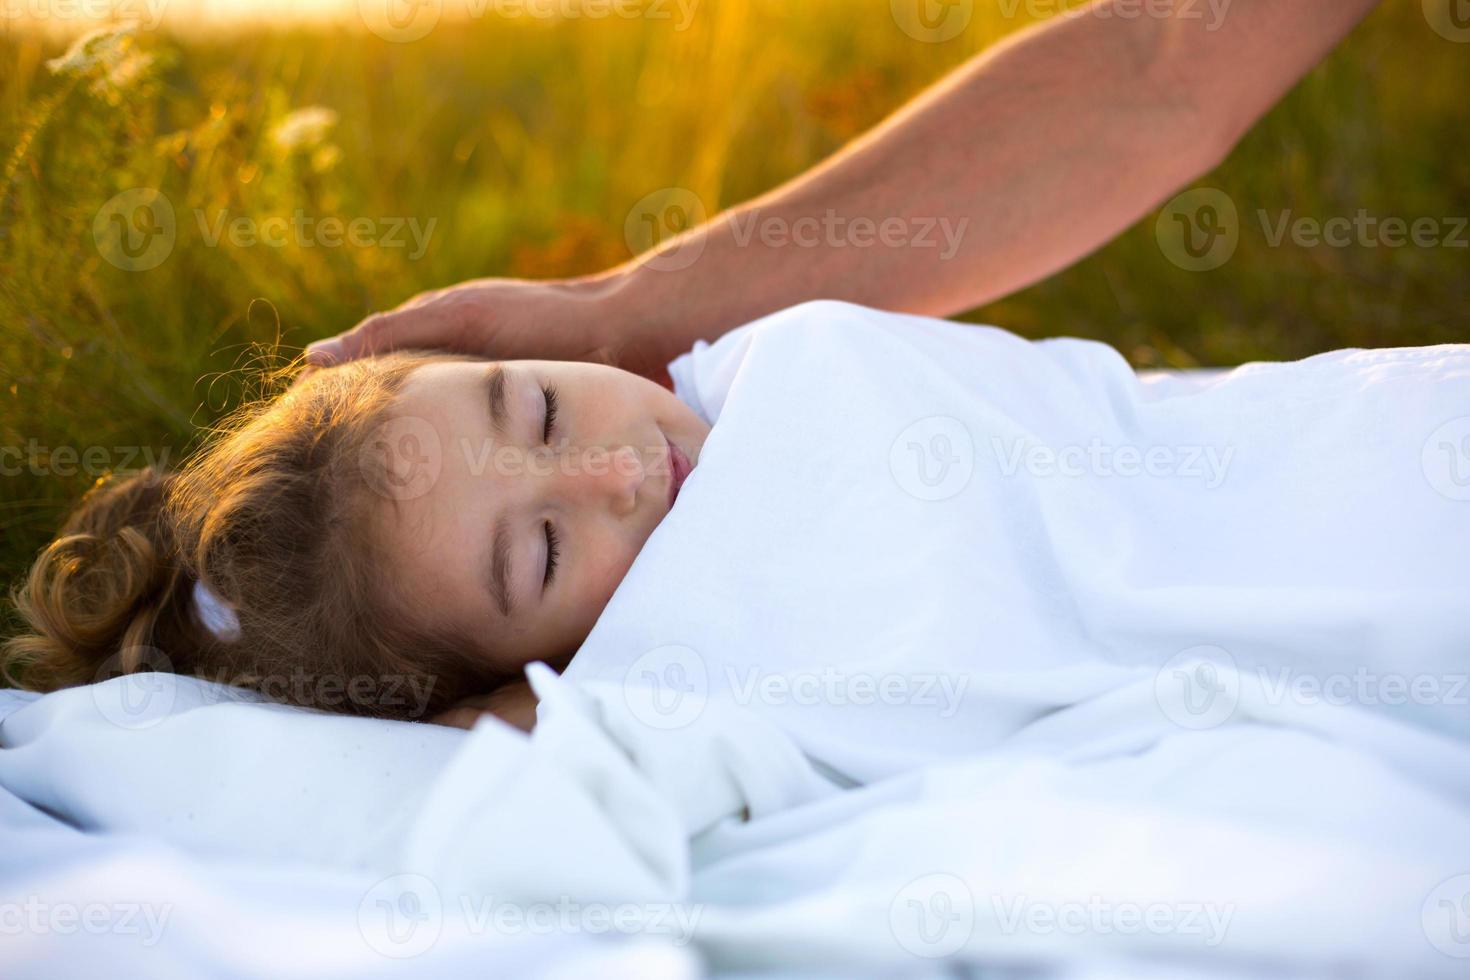 garota dorme na cama branca na grama, ar fresco. a mão do papai gentilmente acaricia sua cabeça. cuidado, proteção, dia internacional da criança, picadas de mosquito foto